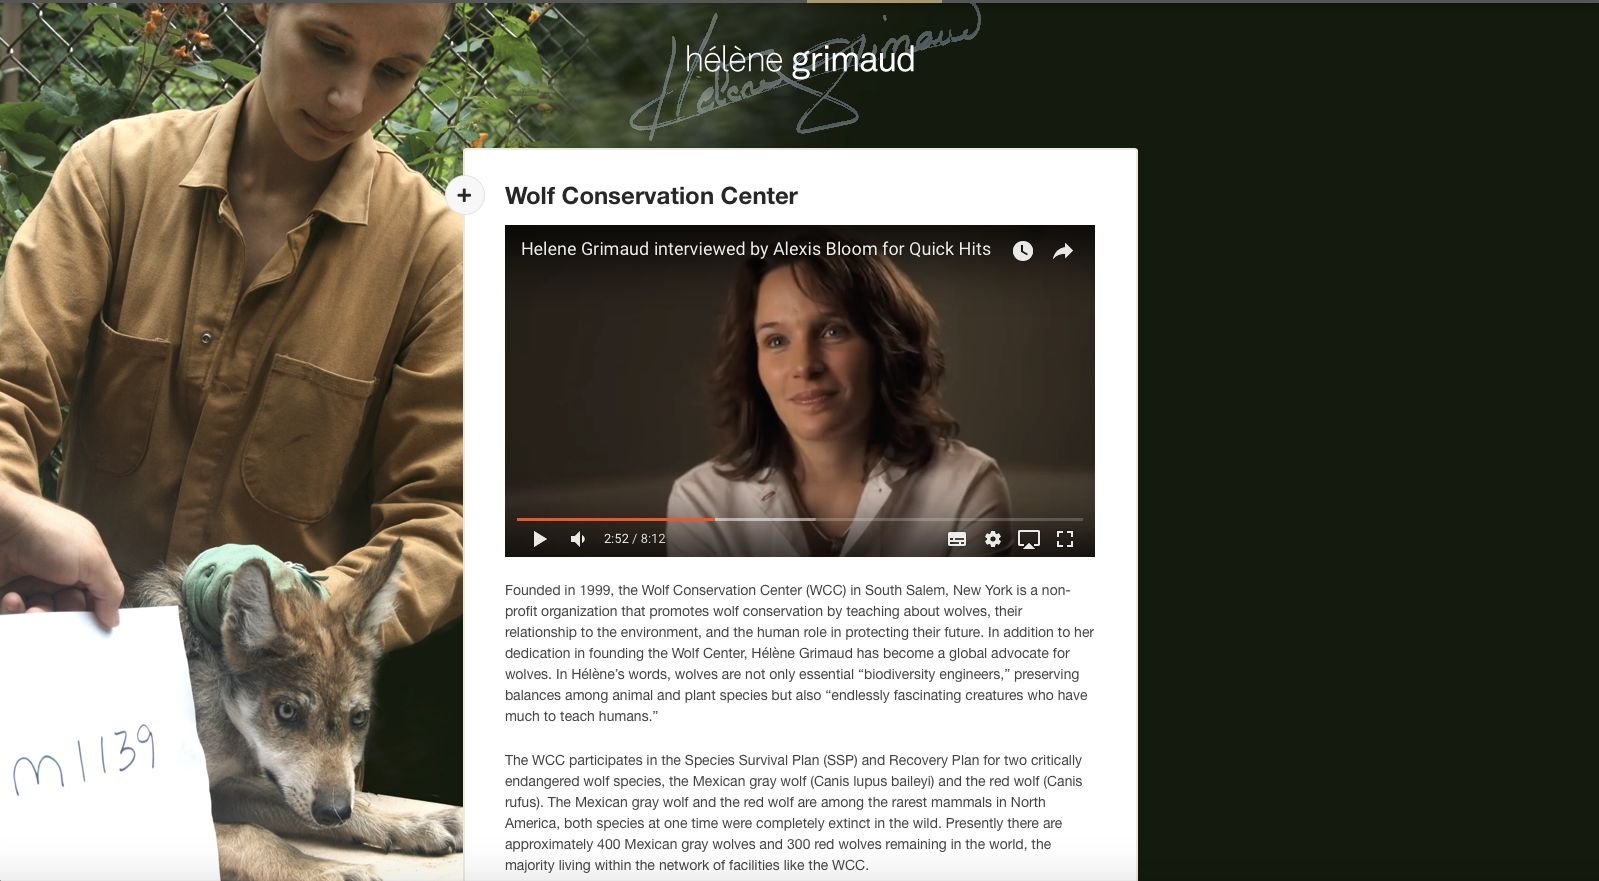 葛莉茉總是真誠地關注野狼的保育與生存環境議題